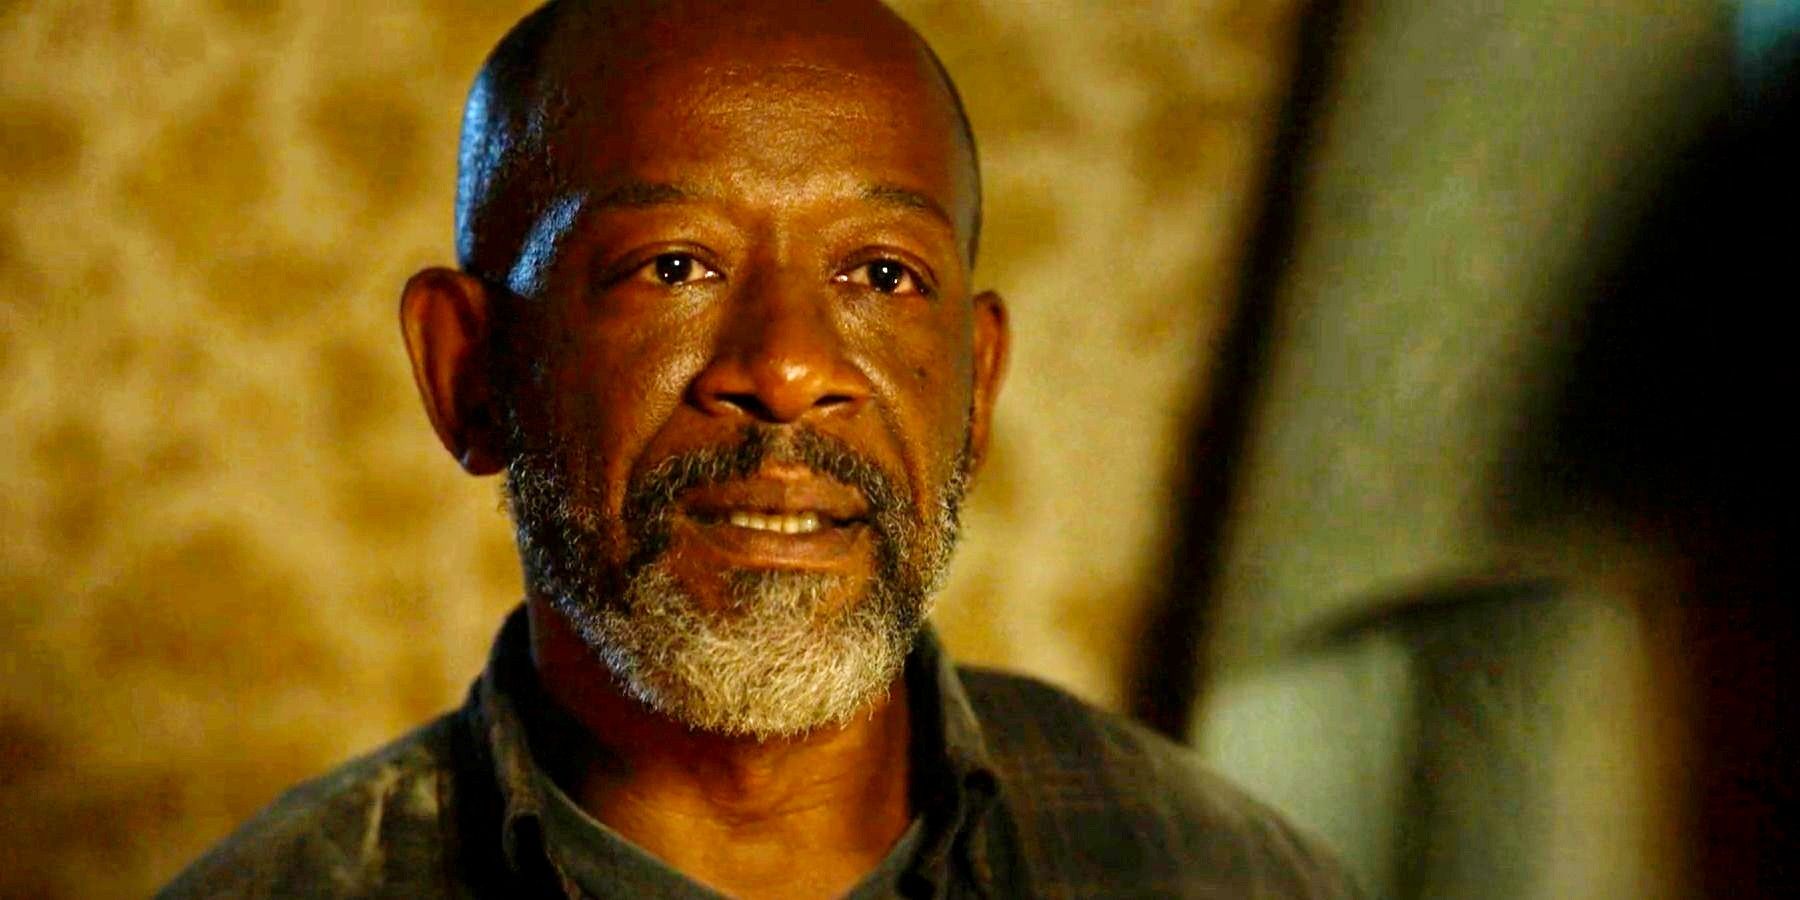 Morgan in Fear the Walking Dead season 8 episode 4